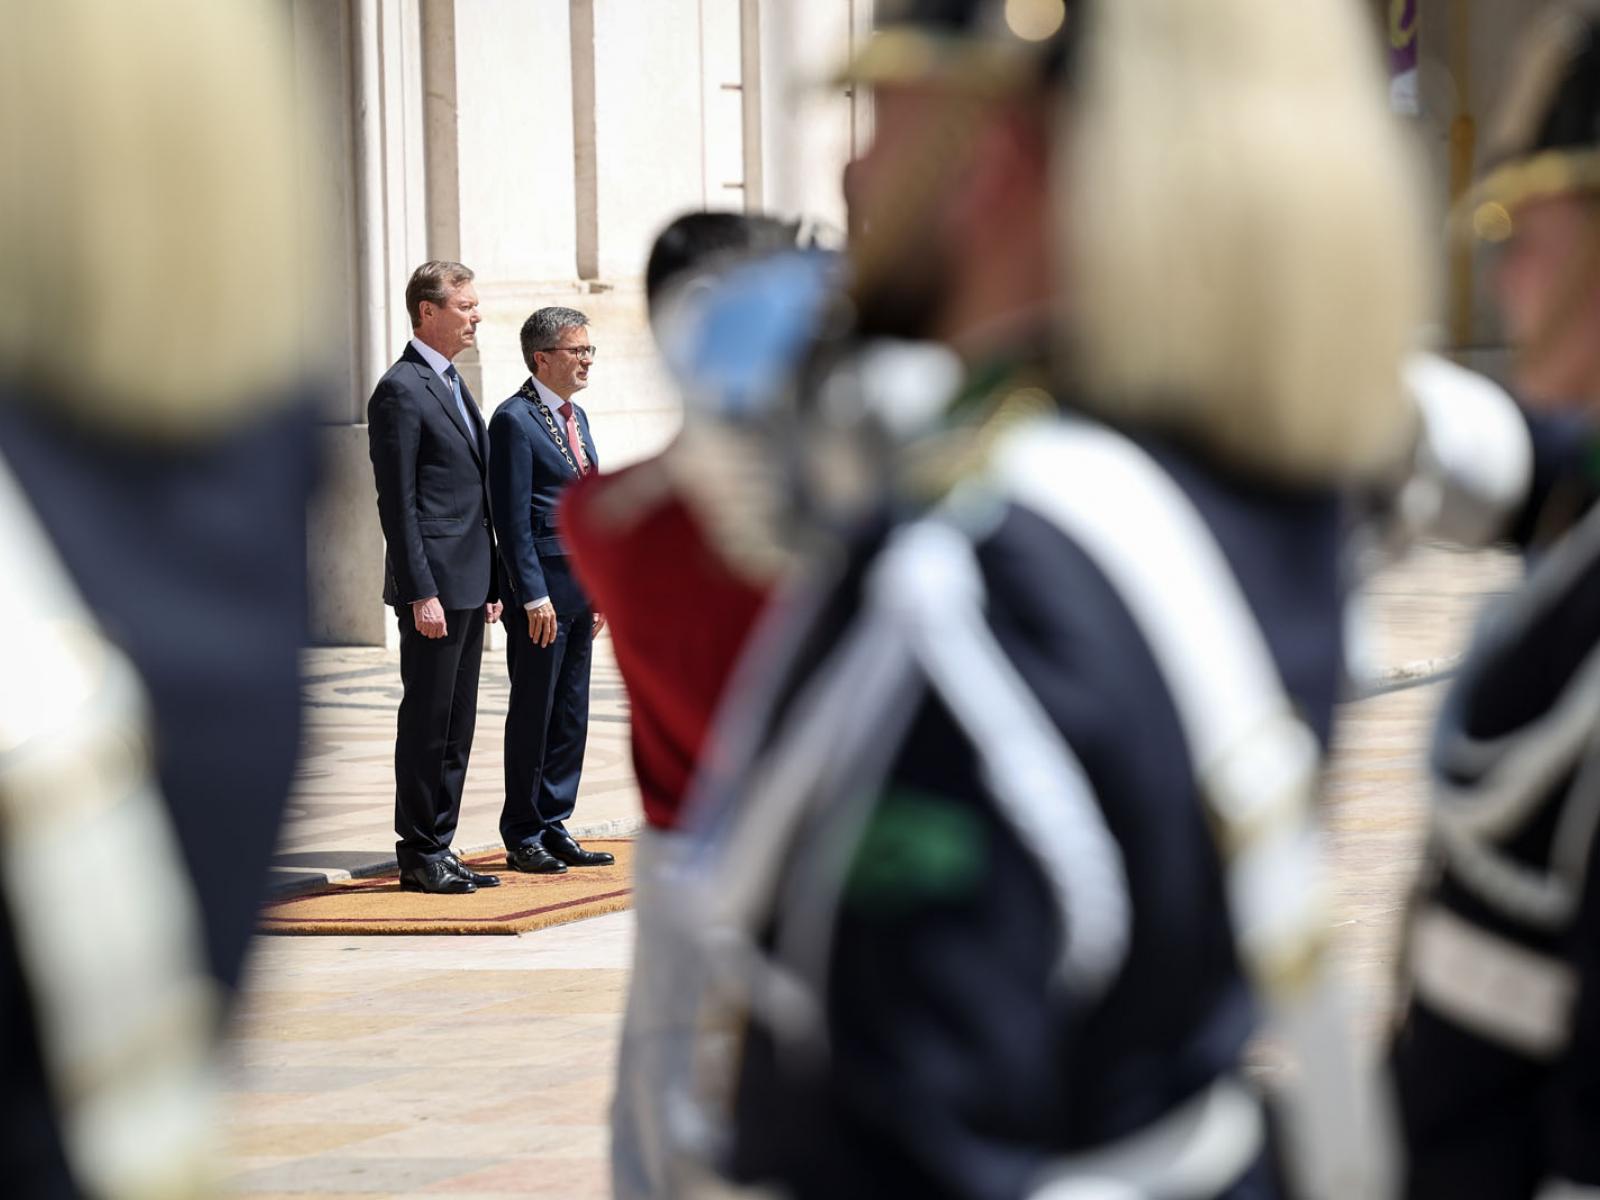 Le Grand-Duc et le maire de Lisbonne devant l'hotel de ville